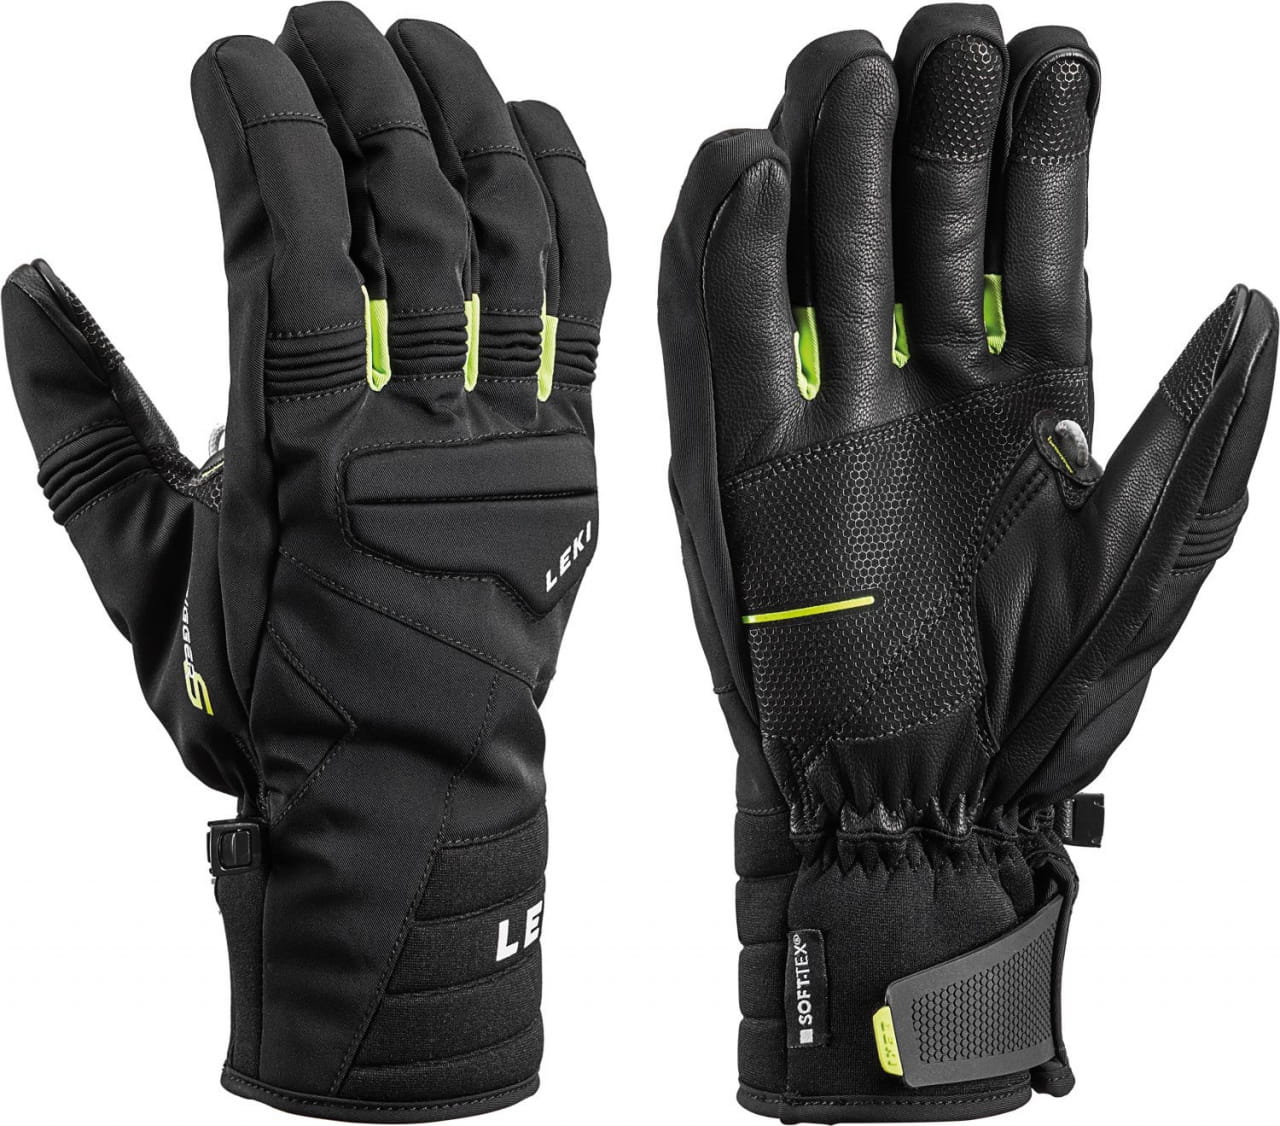 Zimní rukavice Leki Progessive 7 S mf touch